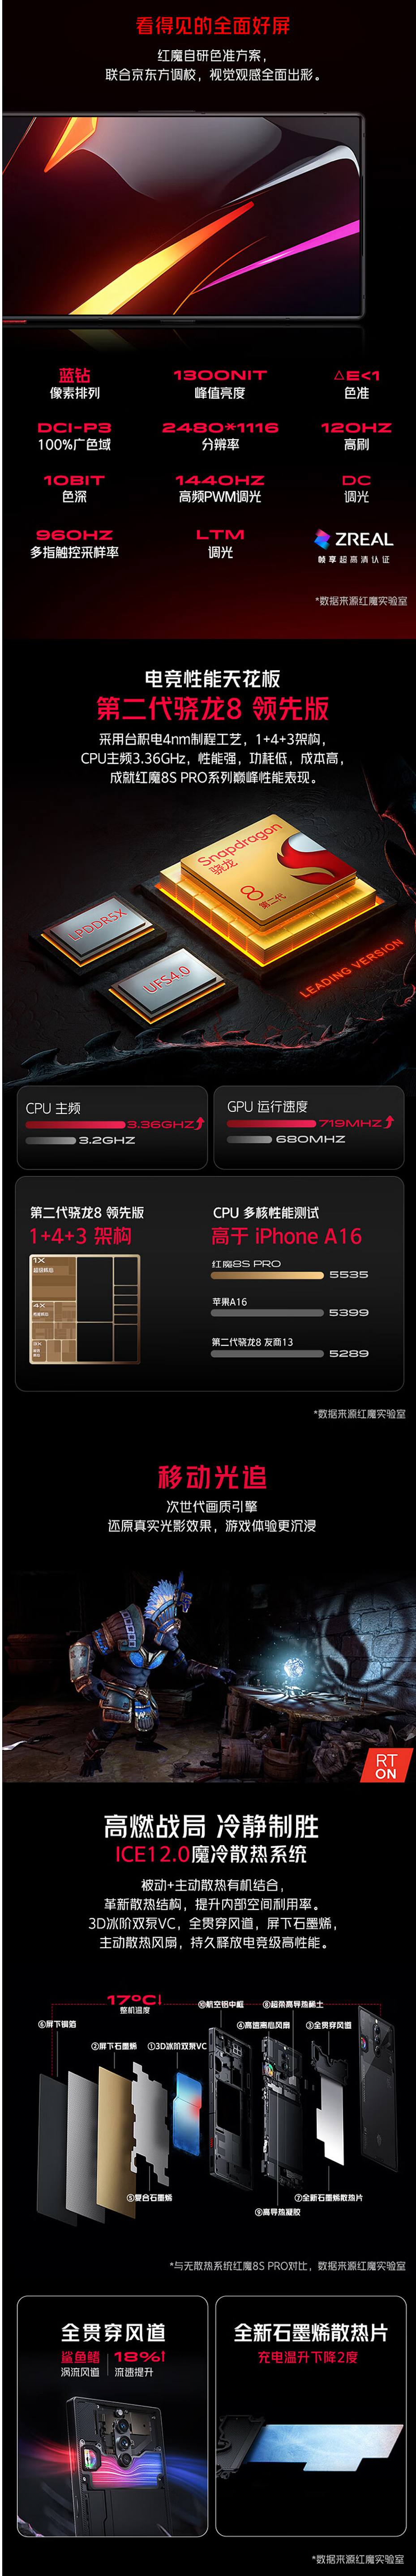 红魔 8S Pro + 手机 24GB+1TB 氘锋透明版上架，售 7499 元 - 4